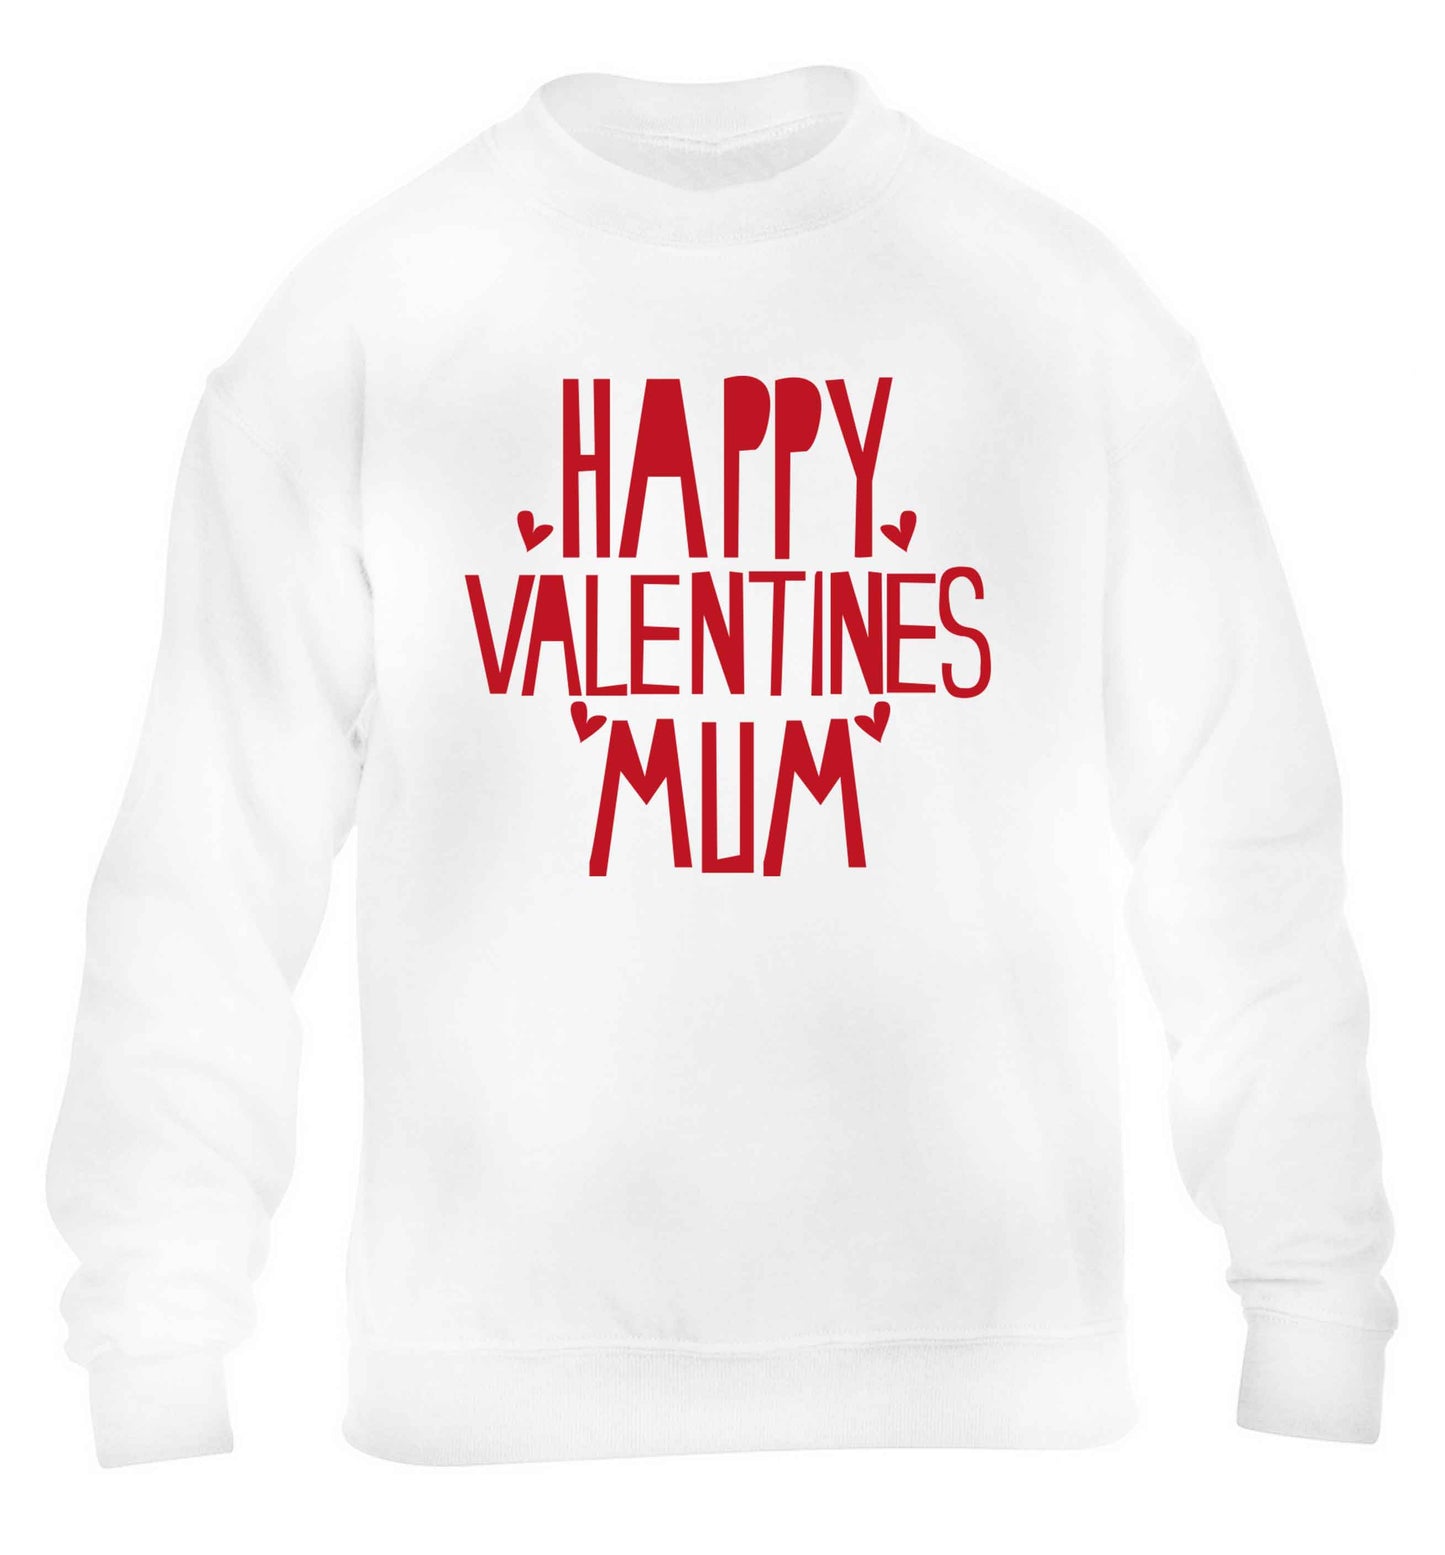 Happy valentines mum children's white sweater 12-13 Years